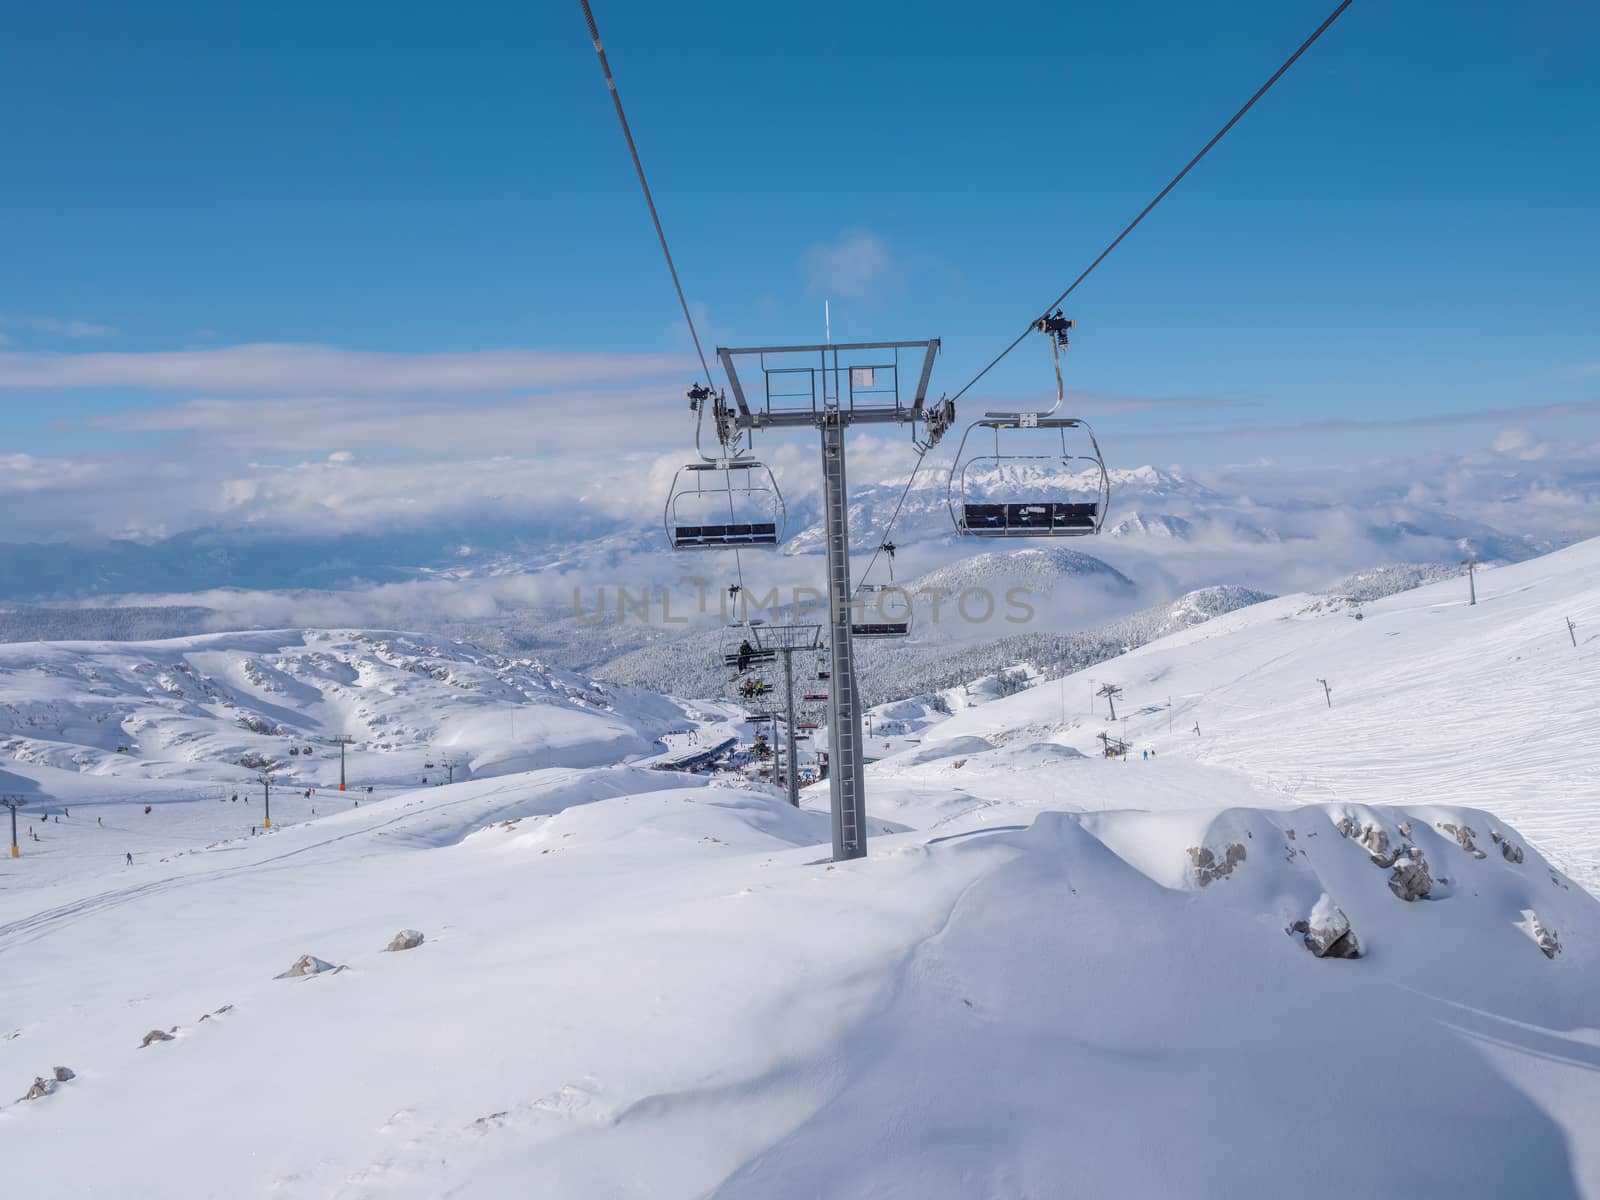 Ski lift on Parnassos ski resort by smoxx